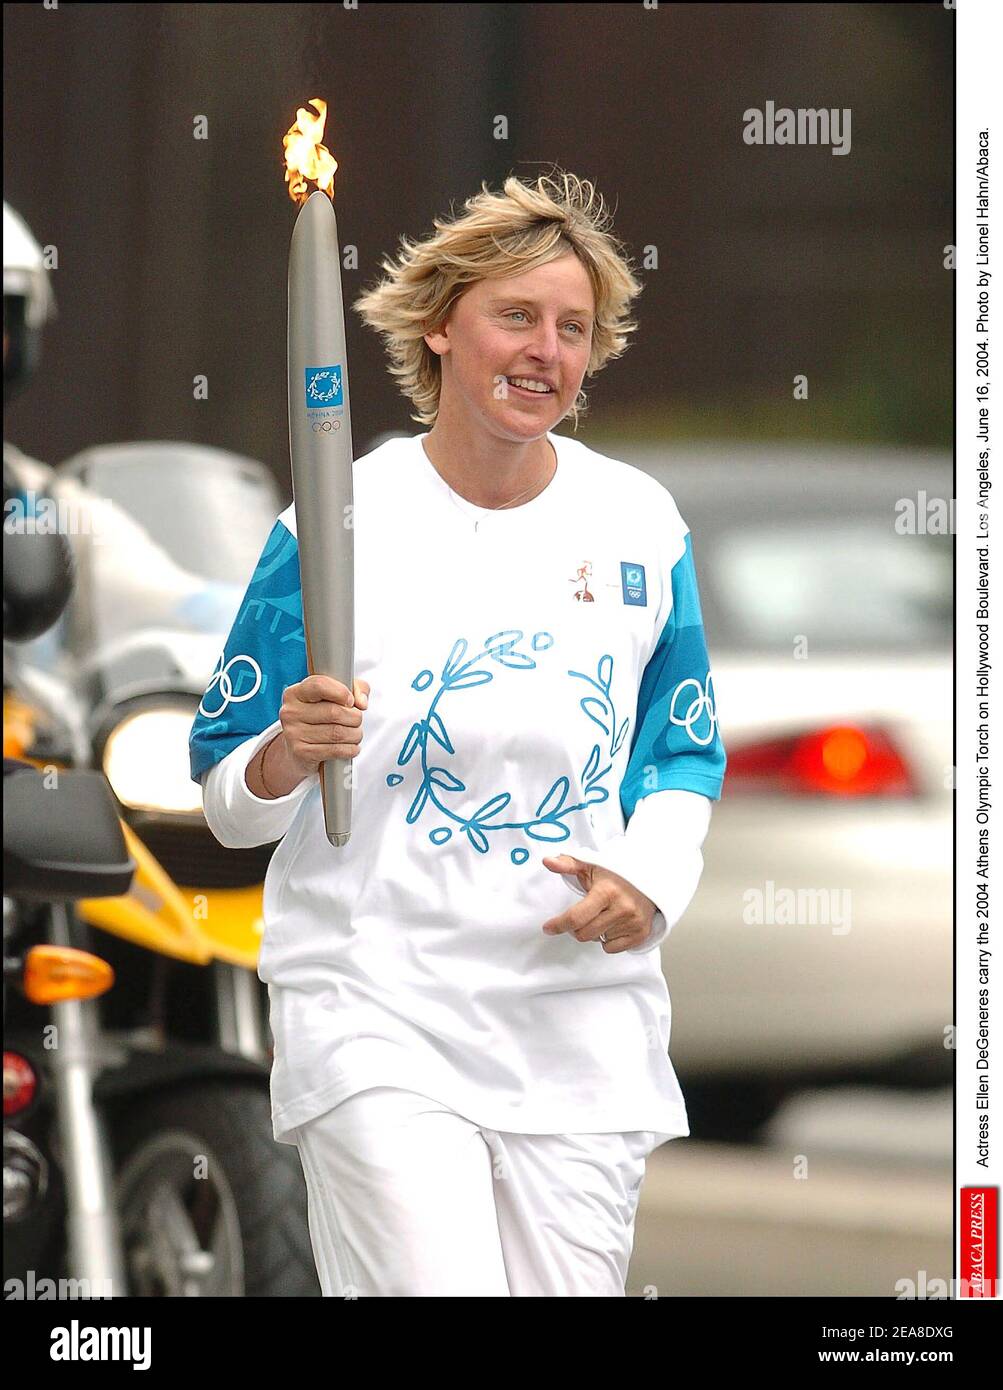 L'attrice Ellen DeGeneres porta la torcia olimpica di Atene 2004 su Hollywood Boulevard. Los Angeles, 16 giugno 2004. Foto di Lionel Hahn/Abaca. Foto Stock